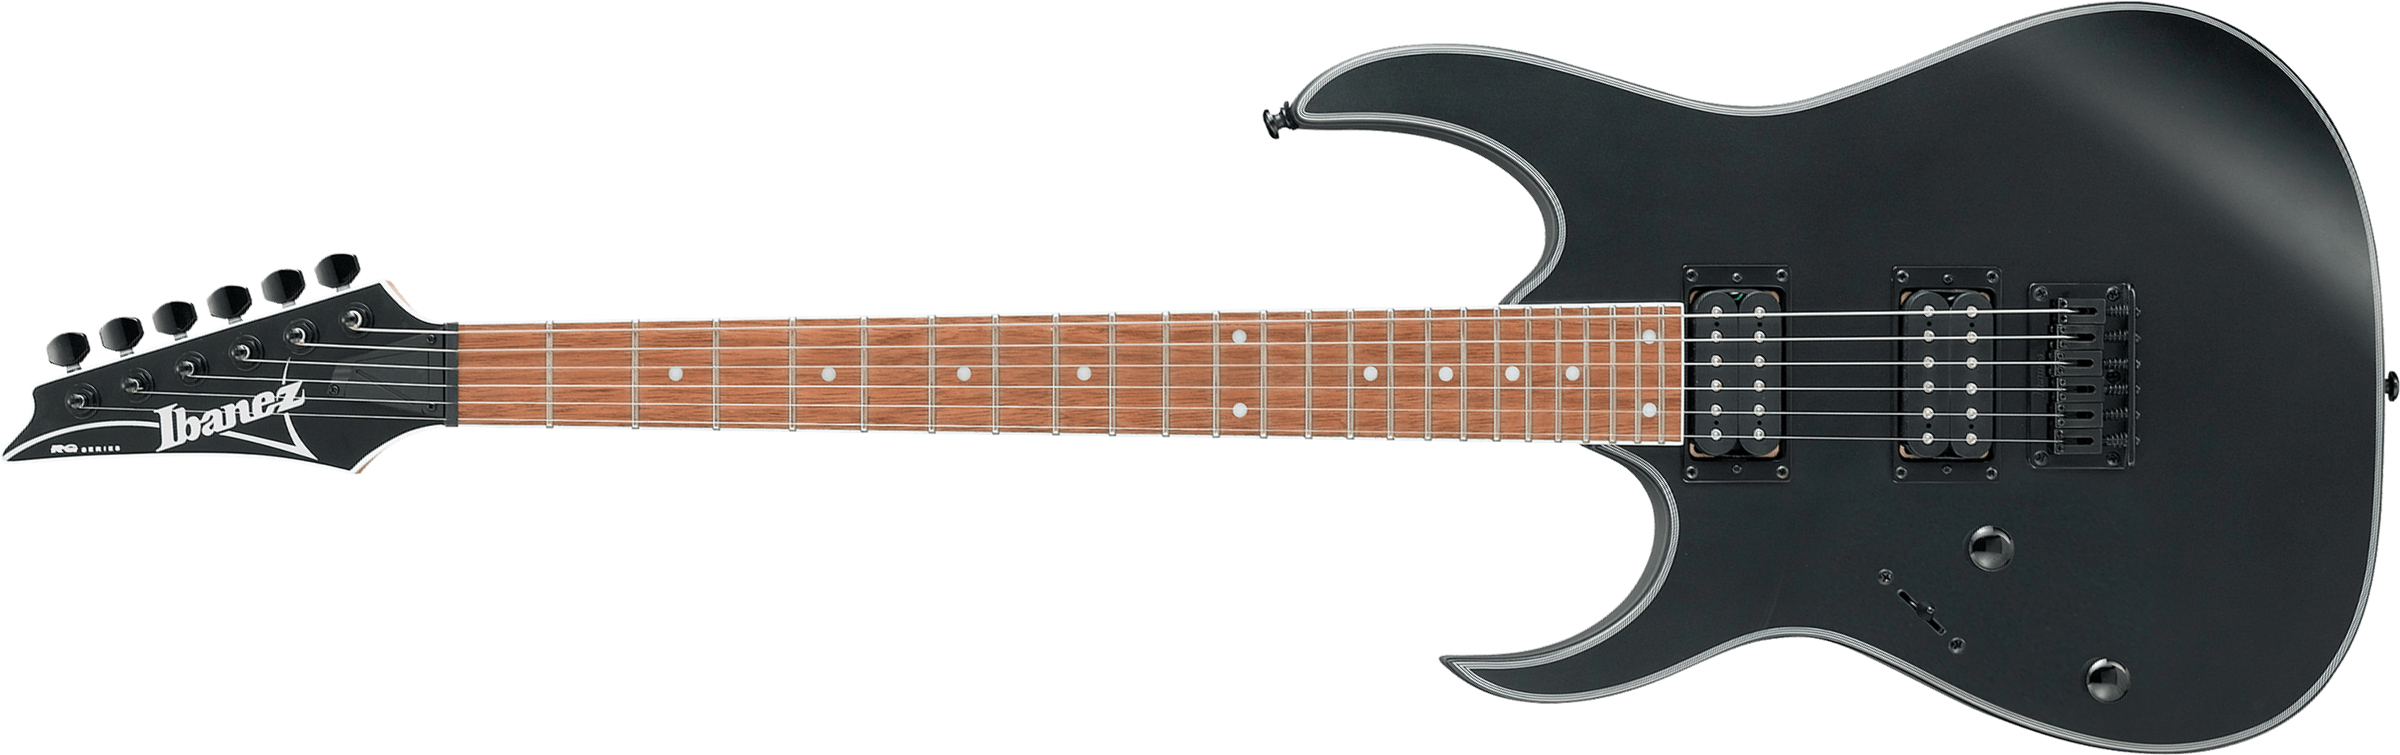 Ibanez Rg421exl Bkf Lh Gaucher Standard Hh Ht Jat - Black - Guitarra electrica para zurdos - Main picture